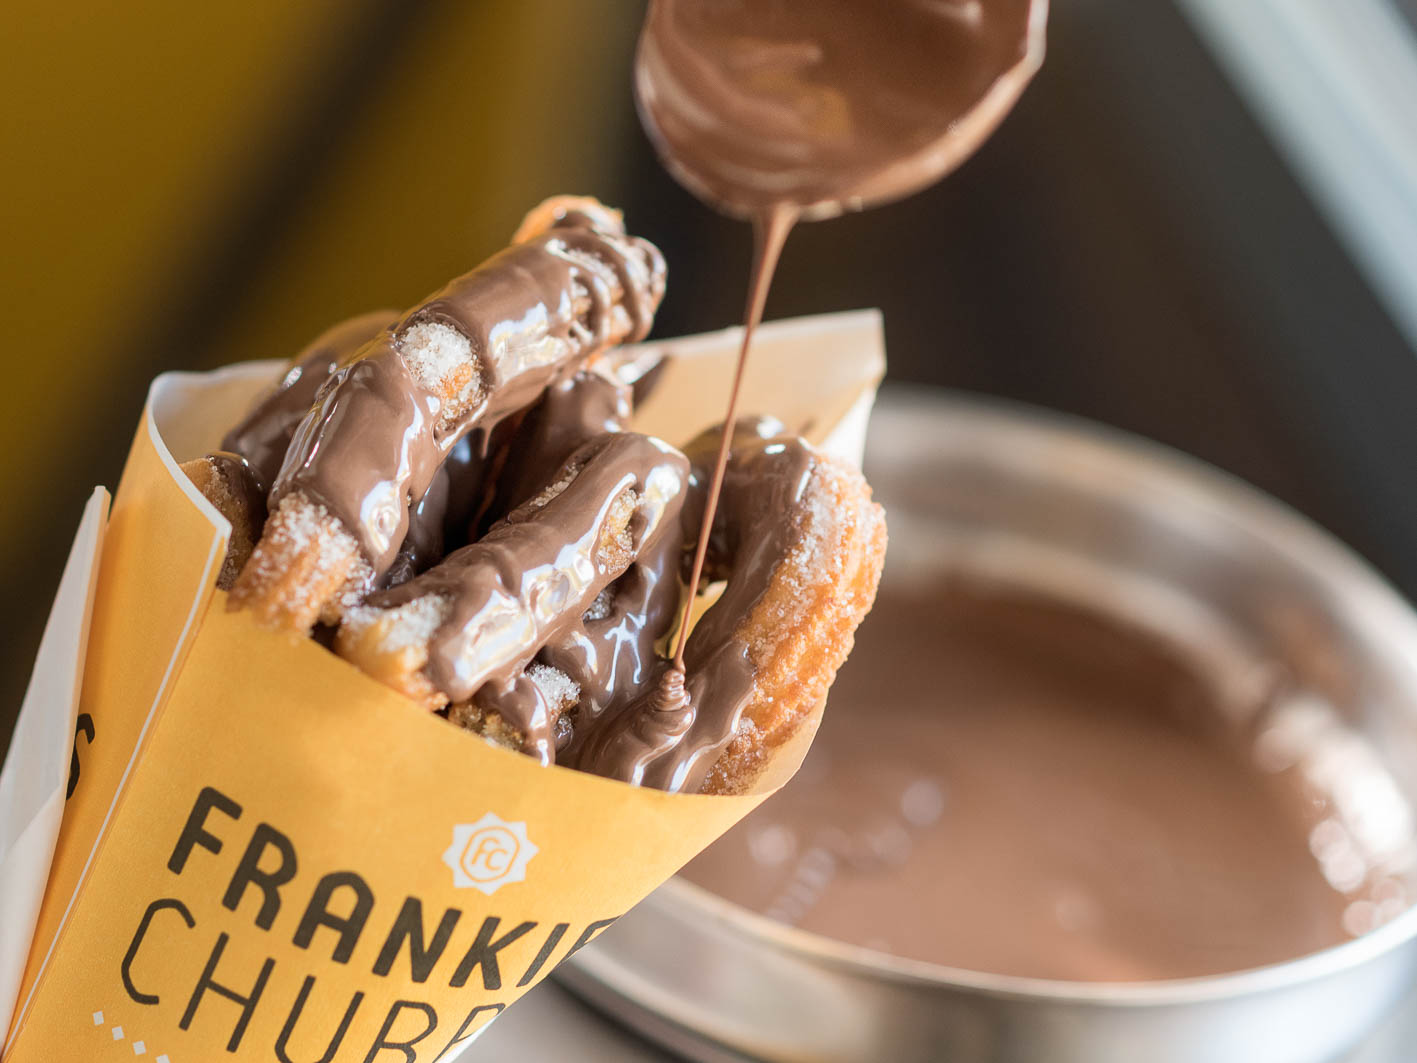 Frankie's Churros frittierte Teigwaren mit flüssiger Schokolade überzogen.